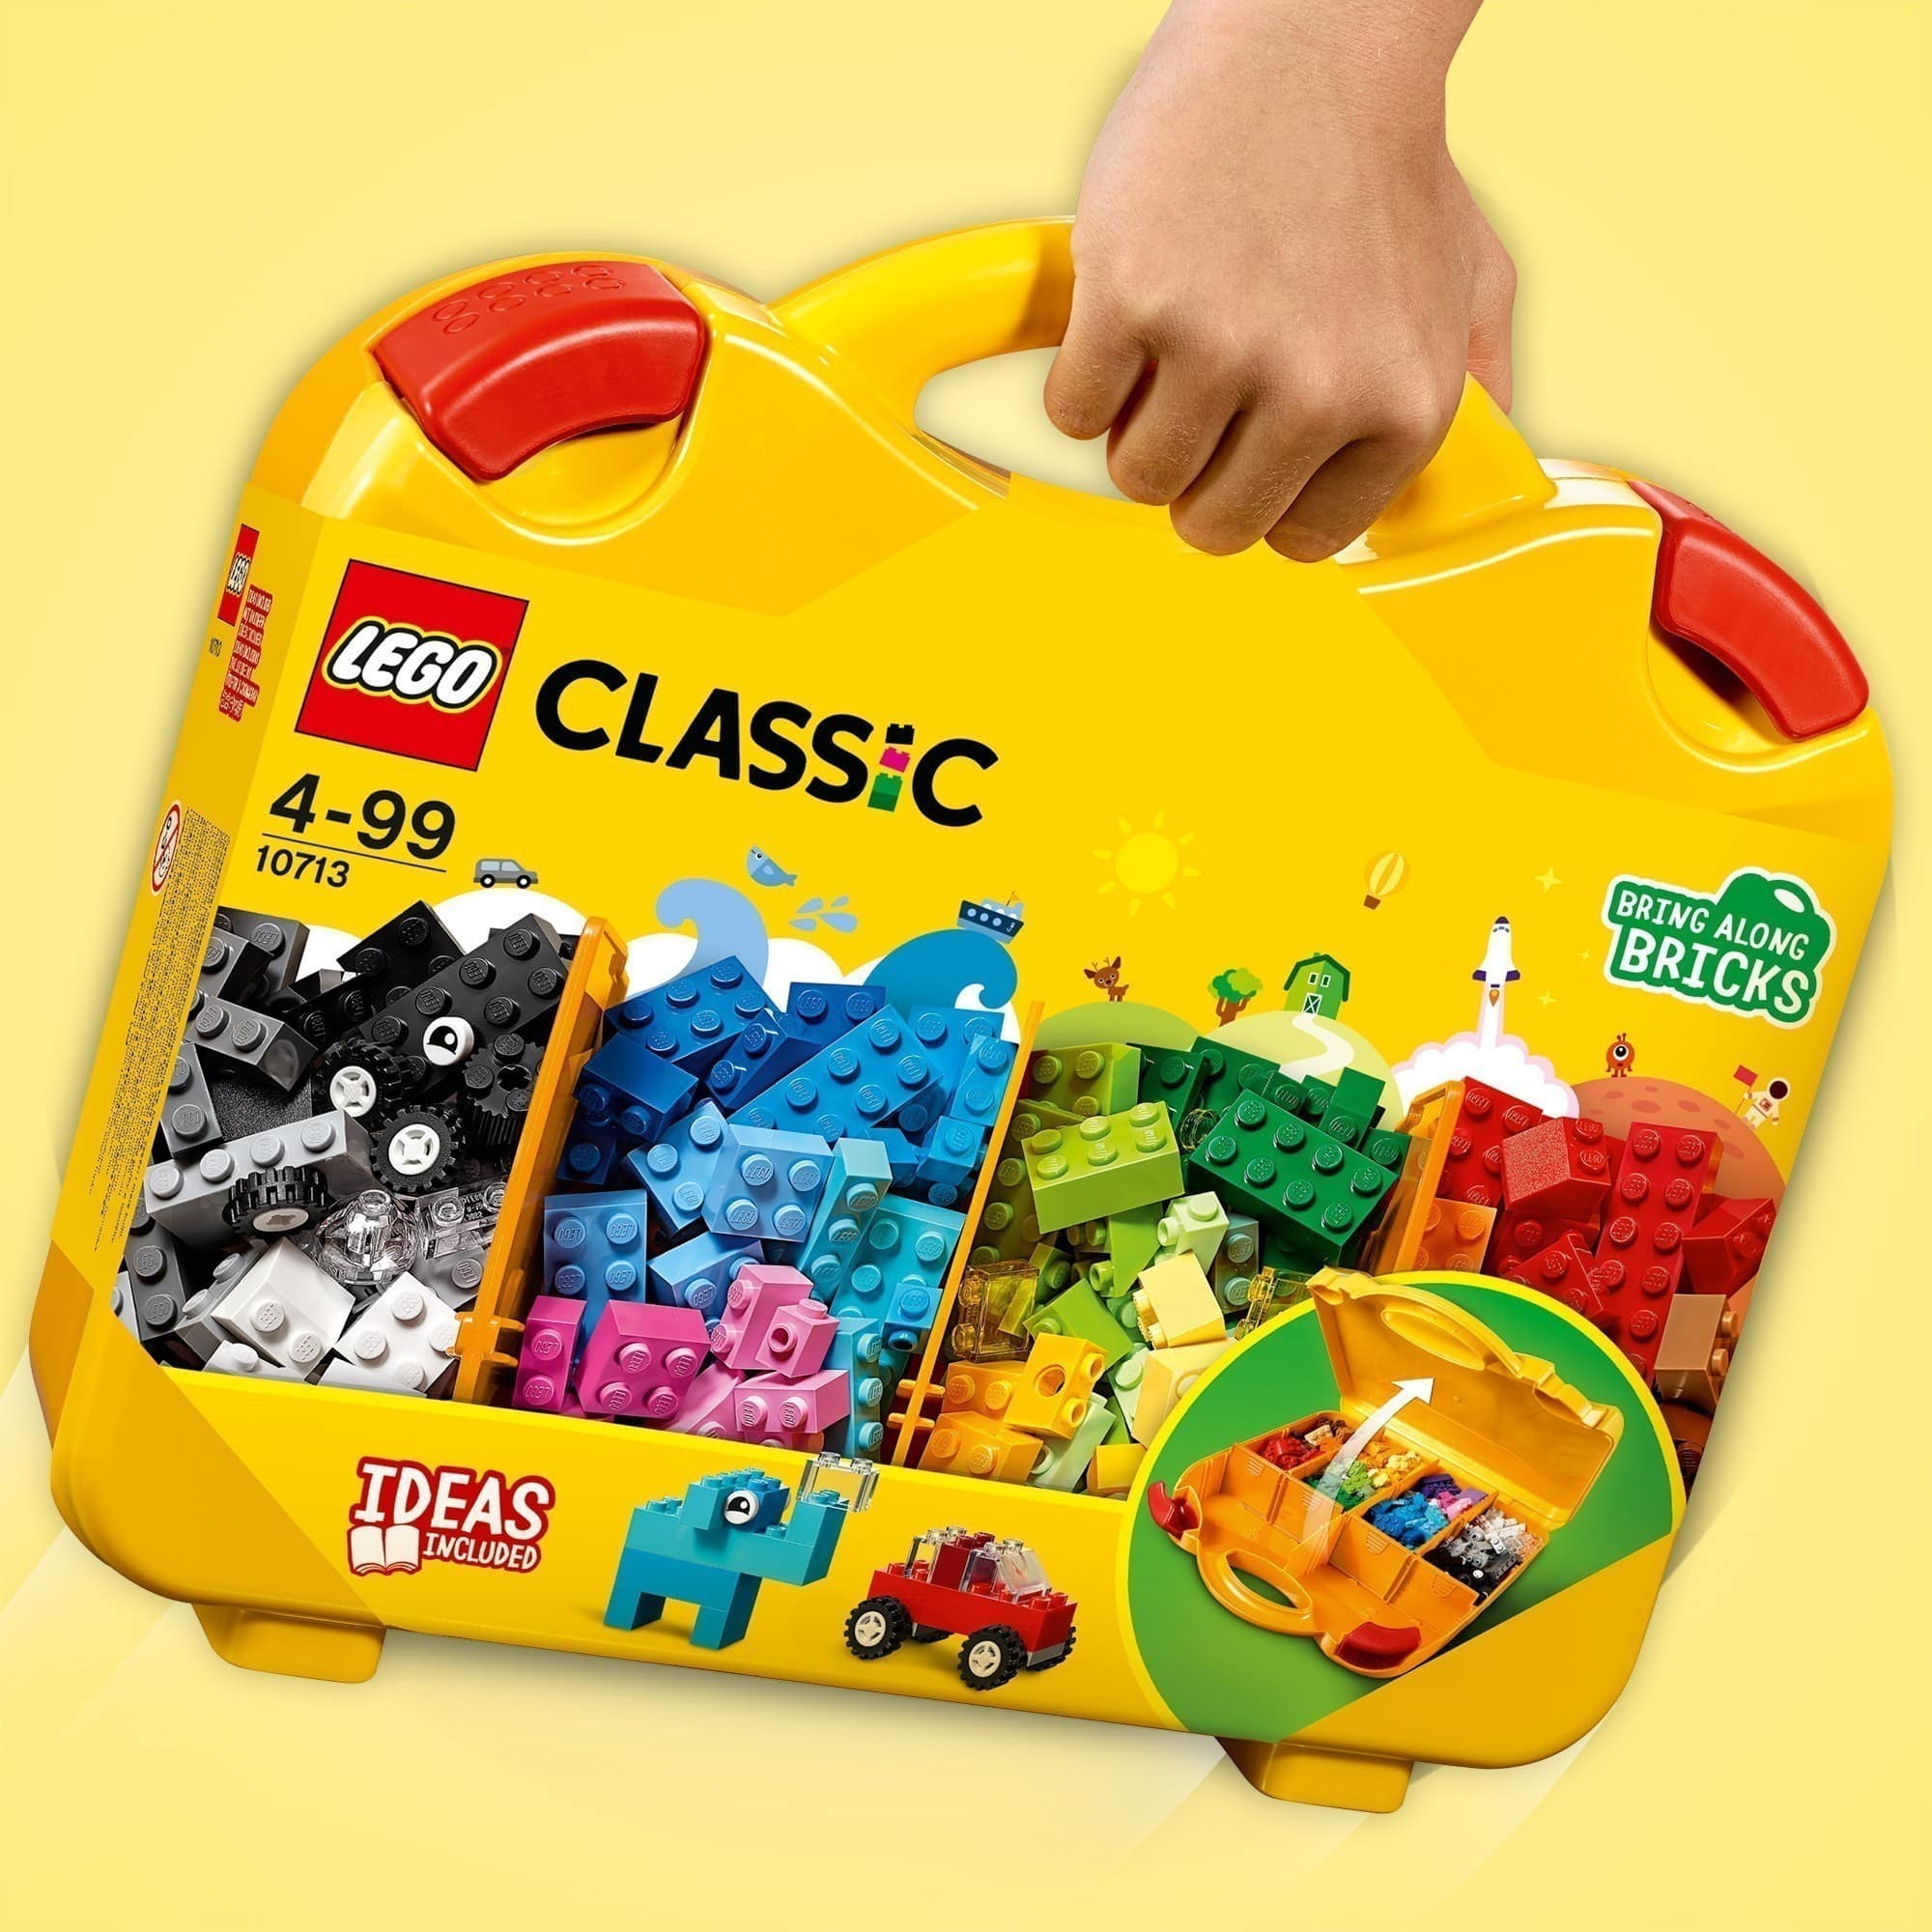 LEGO® Classic - Creative Suitcase